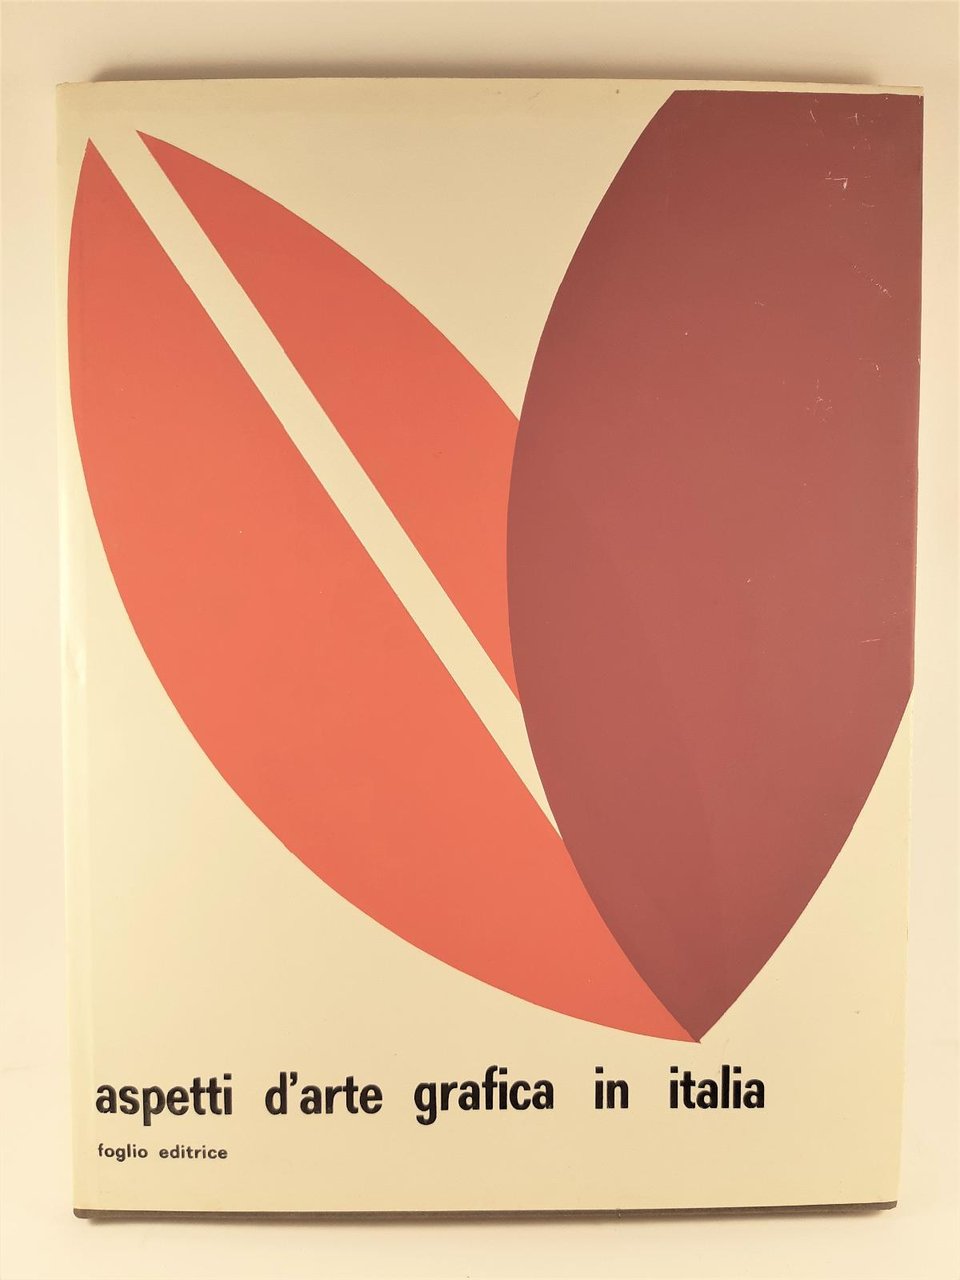 Aspetti d'arte grafica in Italia Foglio editrice